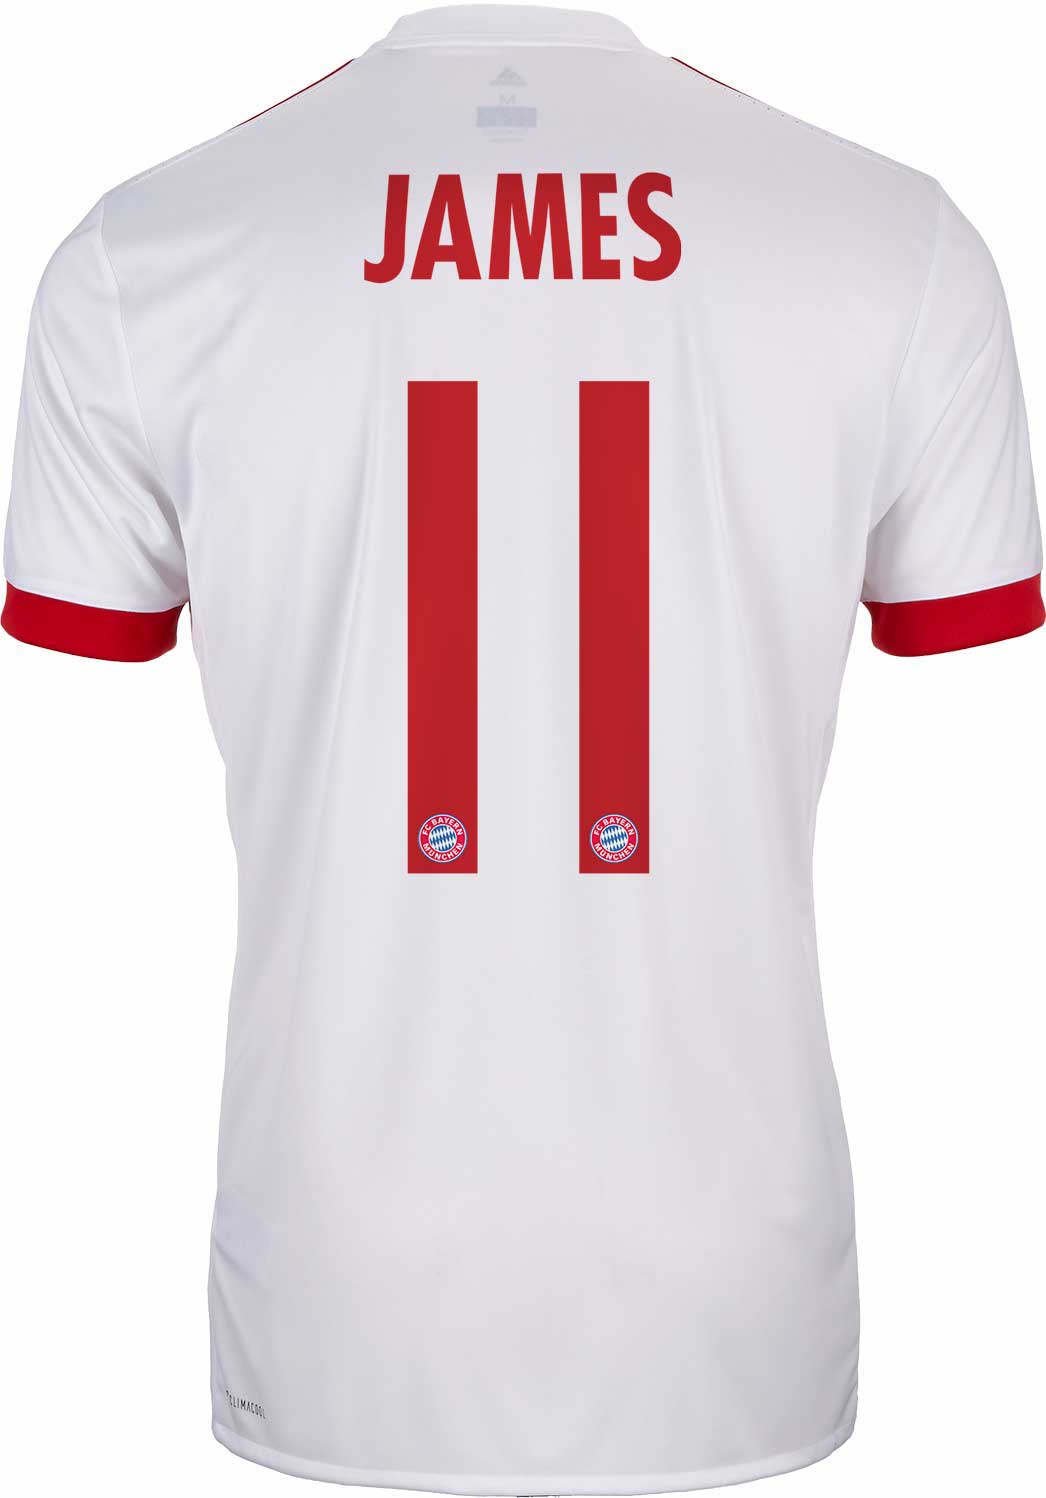 2017/18 adidas Kids James Rodriguez Bayern Munich UCL ...